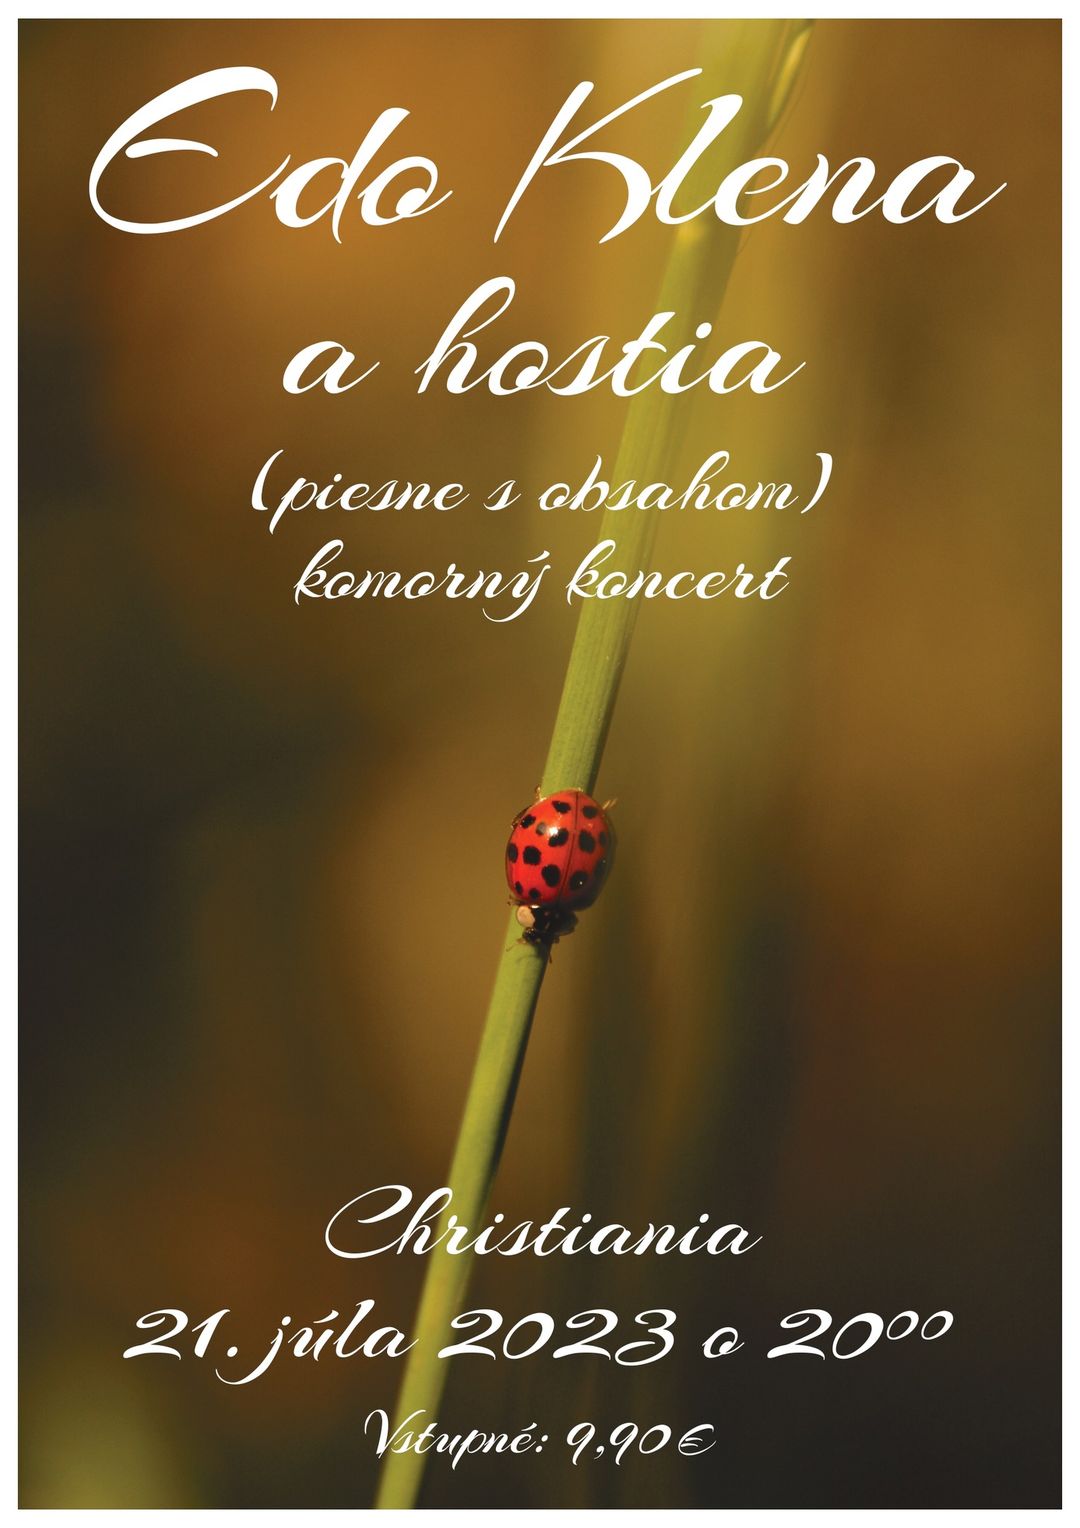 Edo Klena a hostia (piesne s obsahom) - komorný koncert | Christiania